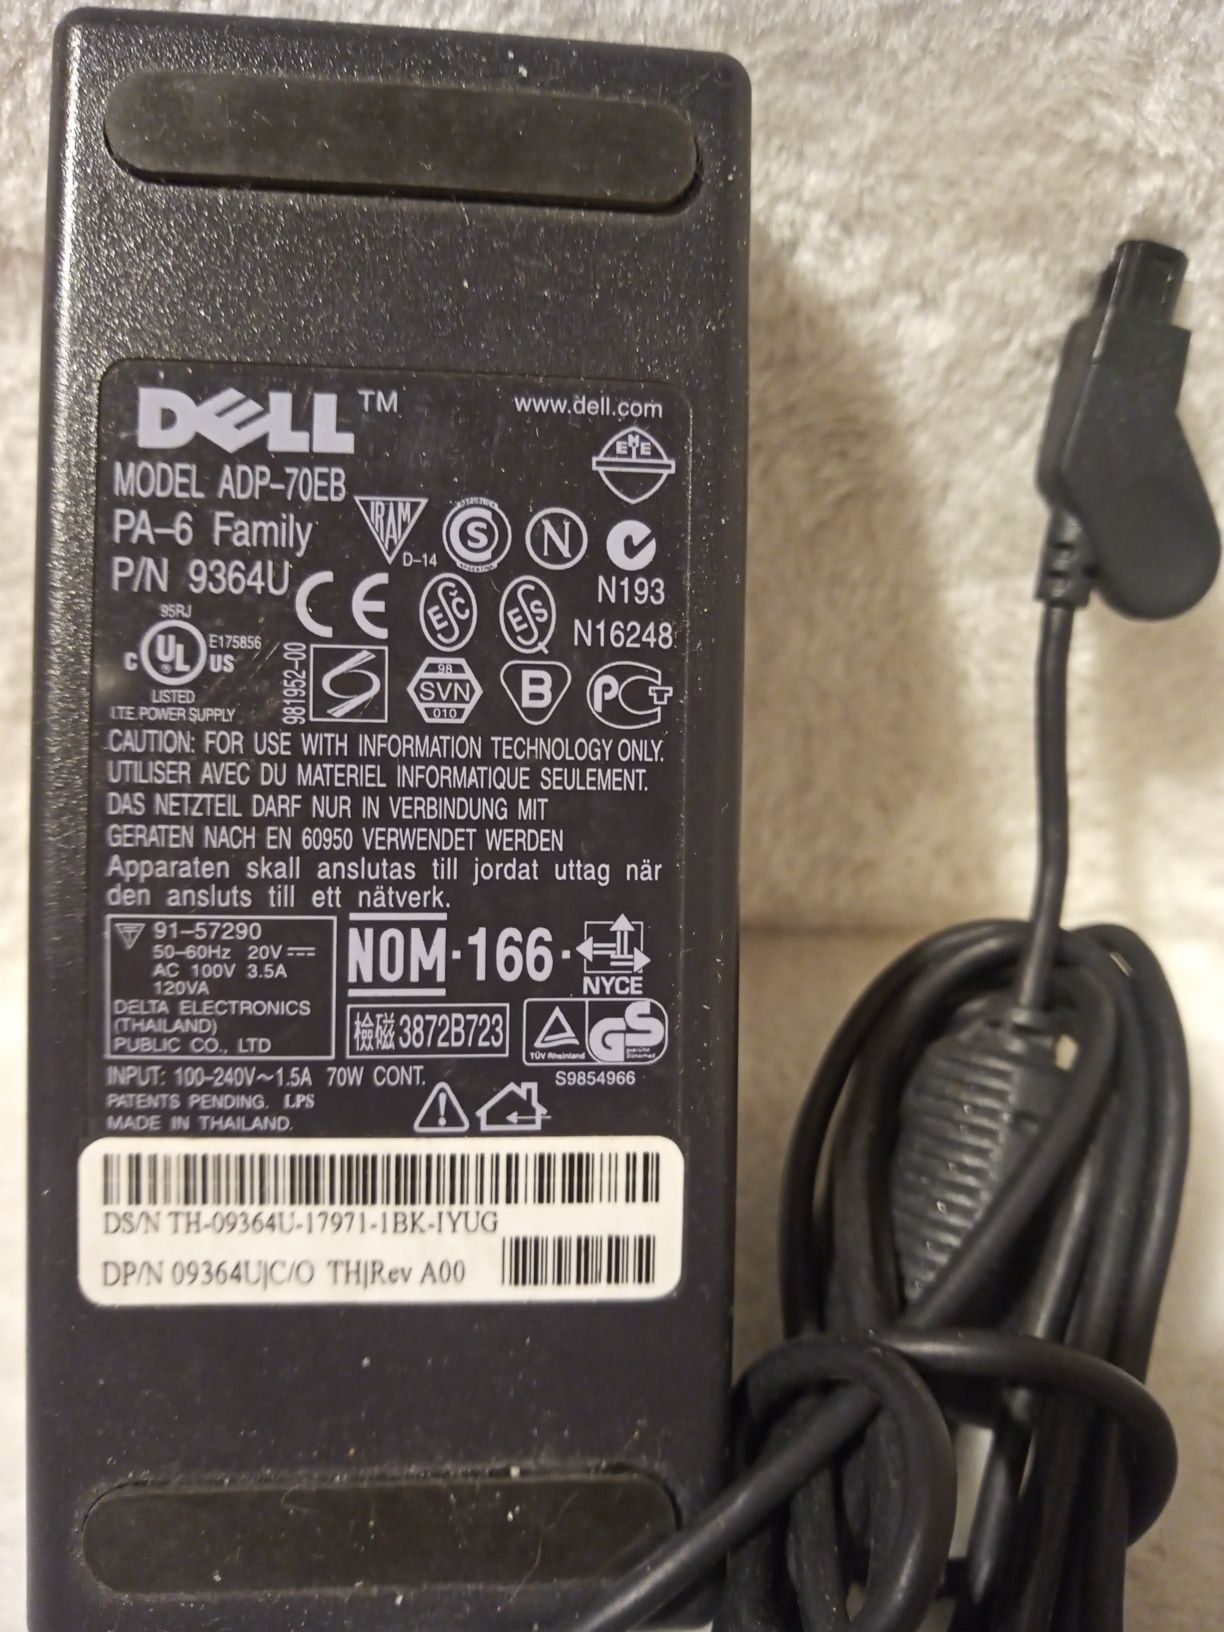 Zasilacz Dell ADP-70EB. 20V 3.5A